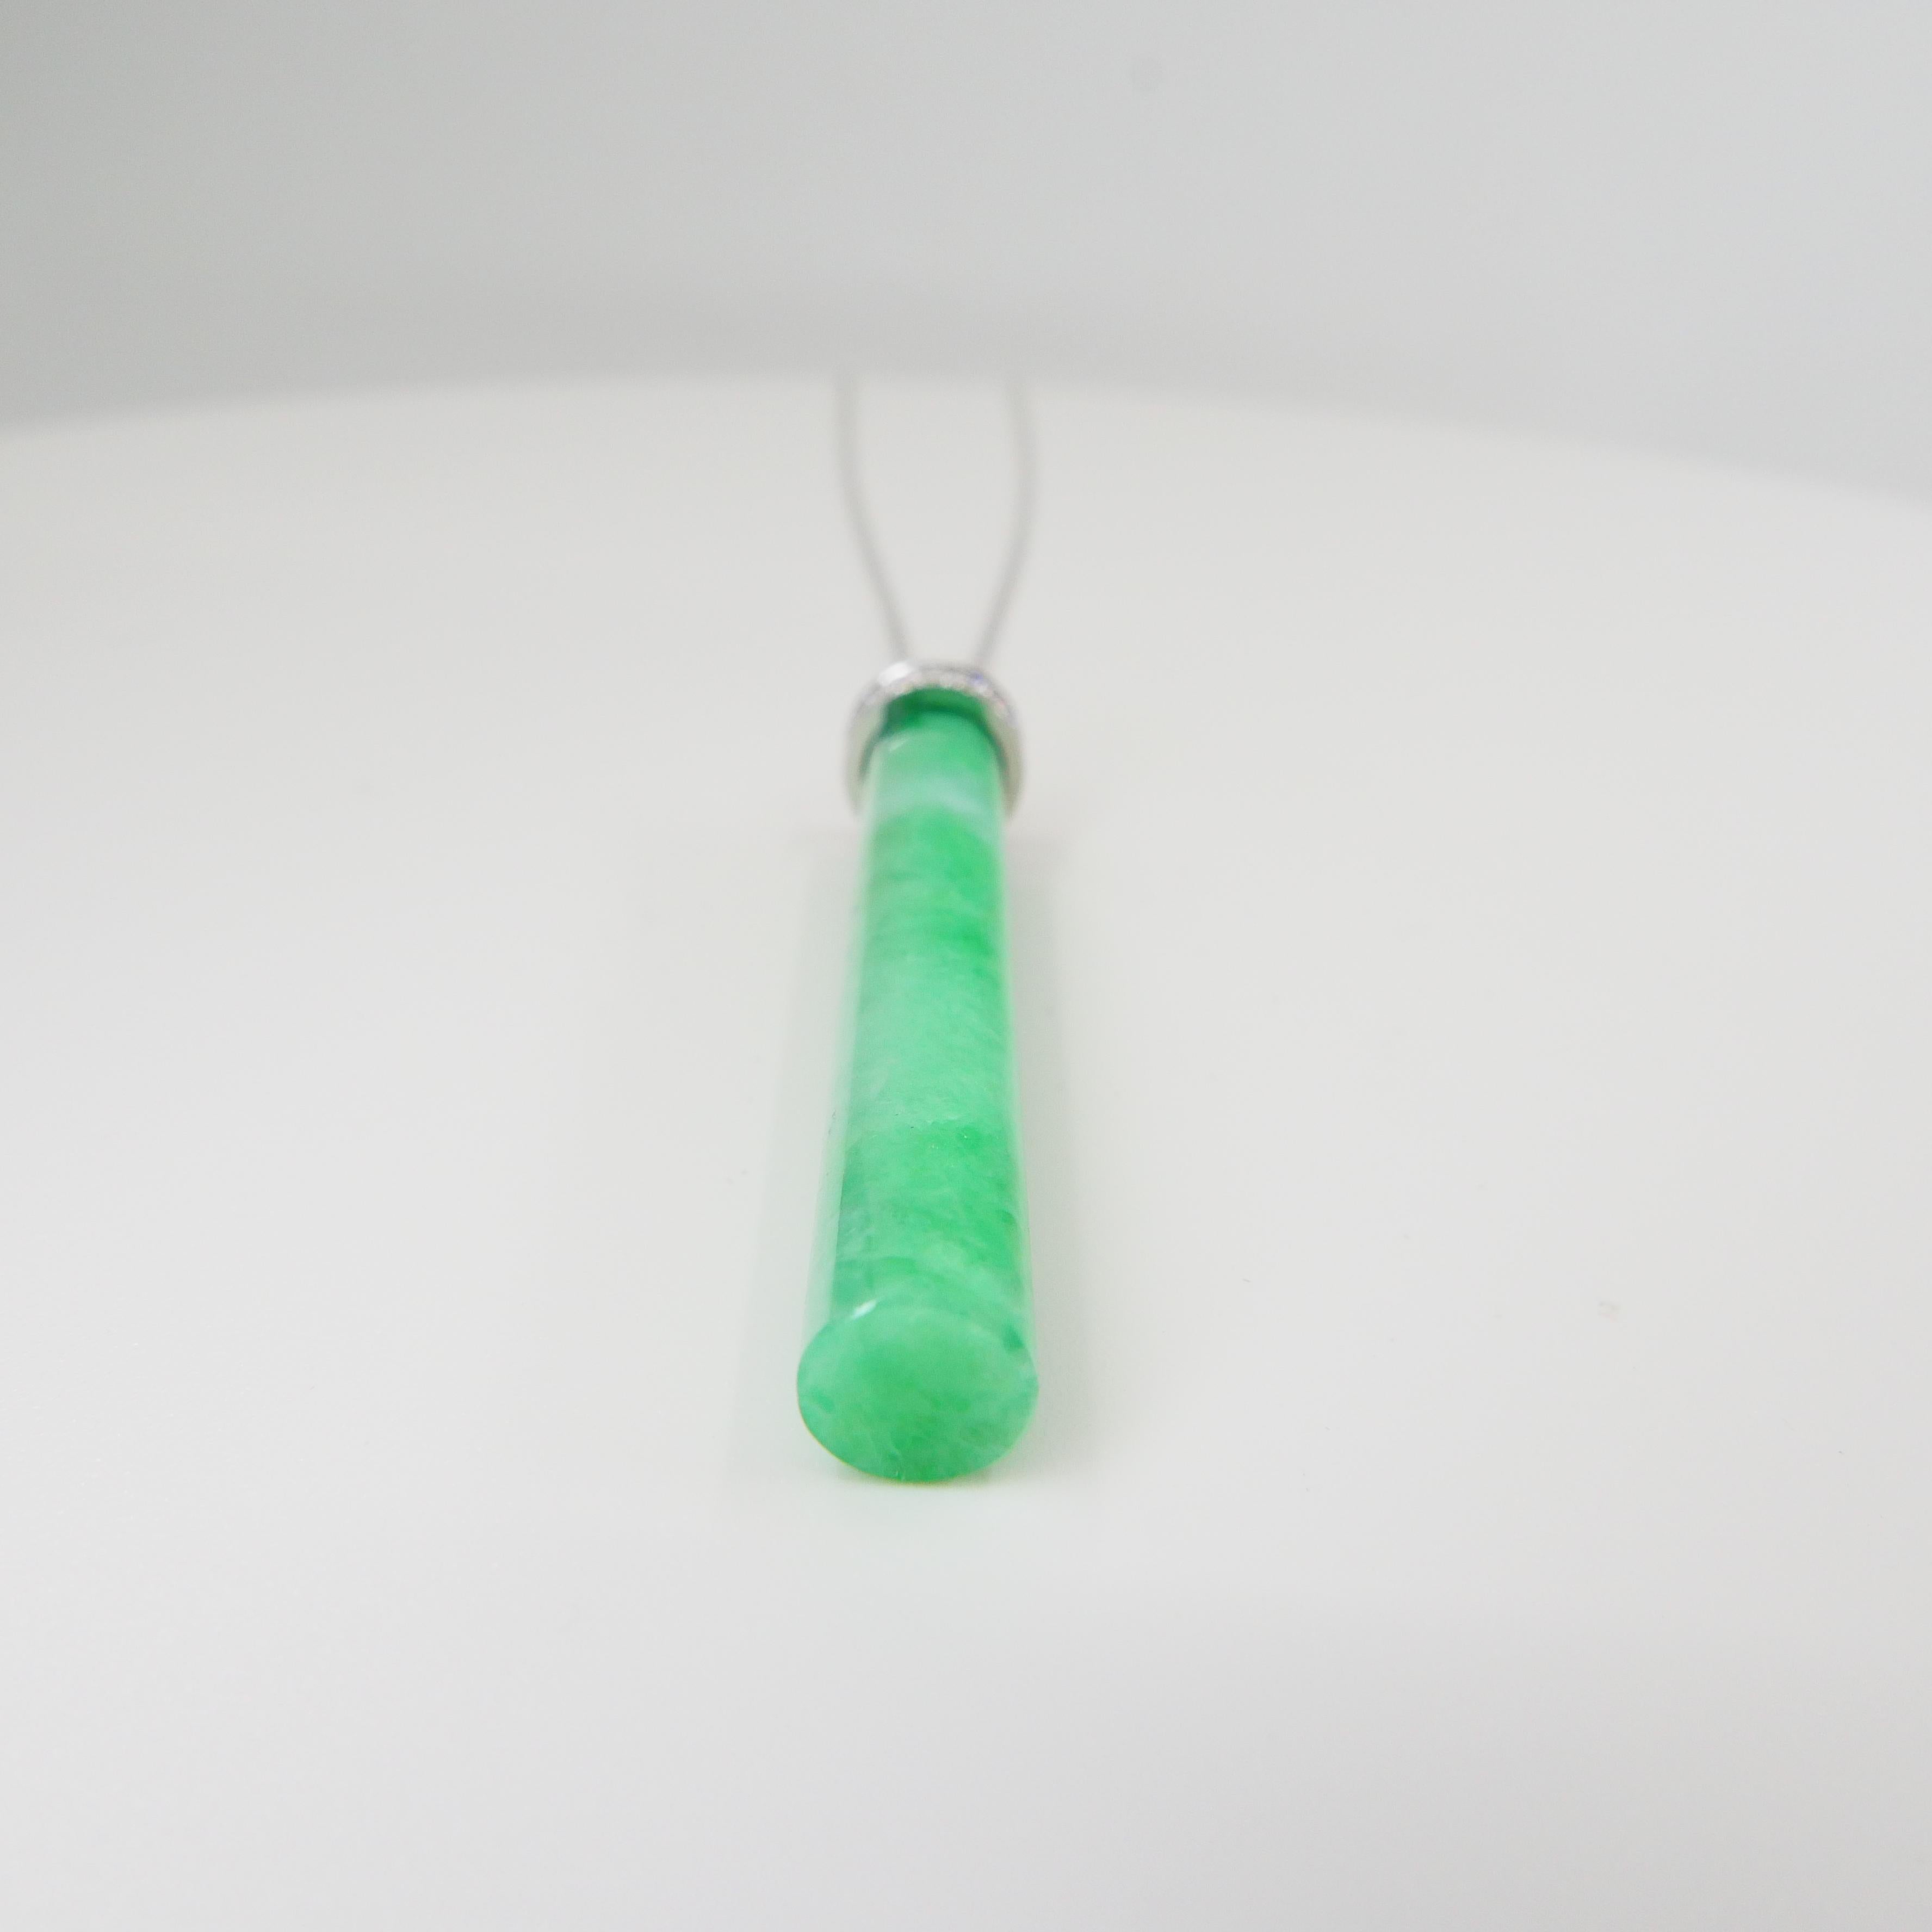 Certified Jadeite Jade 38.51 Carats & Diamond Pendant Drop Necklace, Apple Green For Sale 2